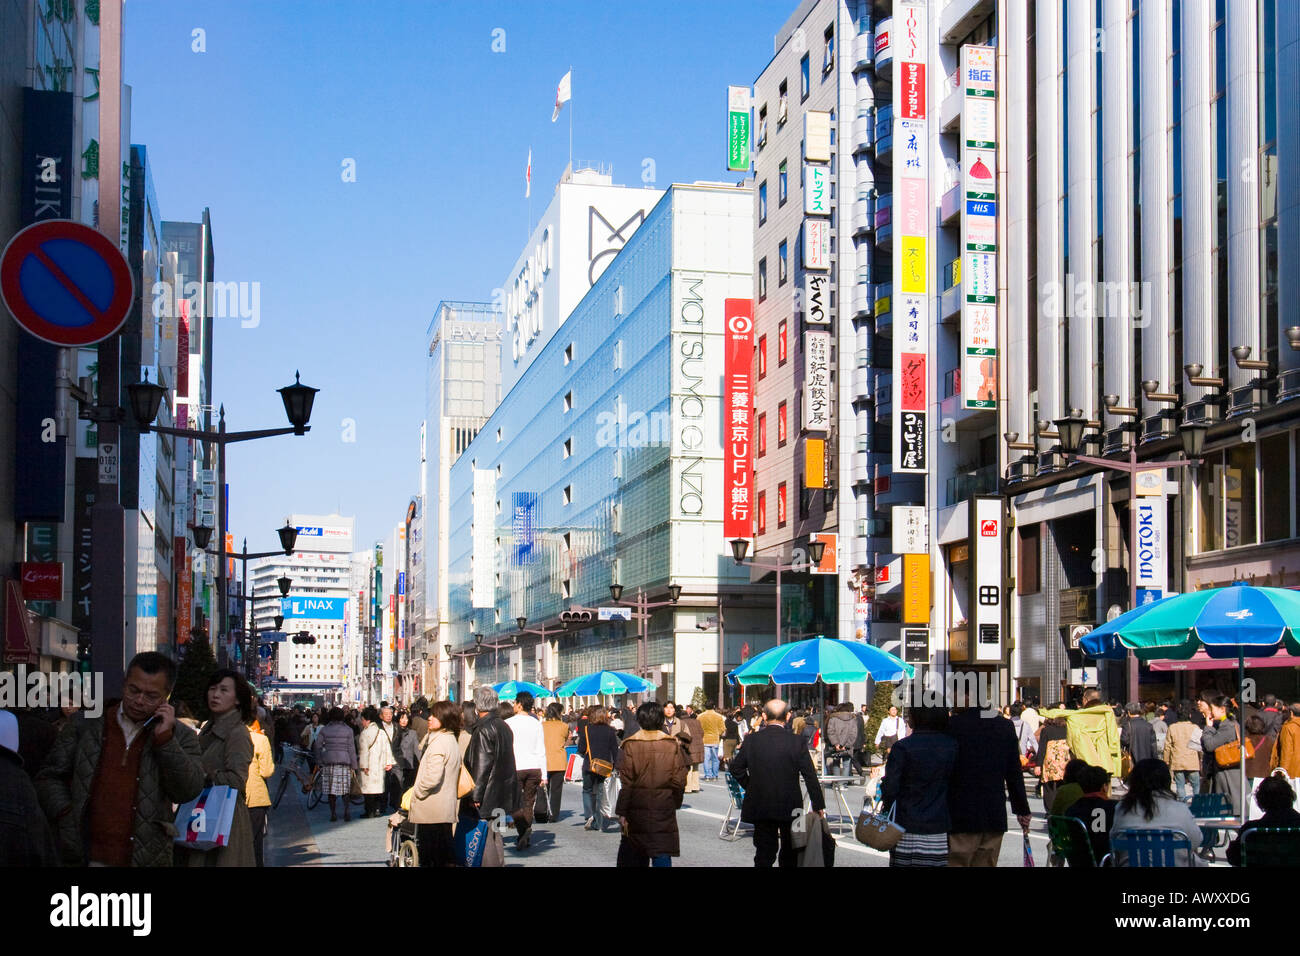 Les gens qui marchent et des commerces le long de l'avenue Chuo Dori le dimanche dans le quartier chic de Ginza de Tokyo Japon Banque D'Images